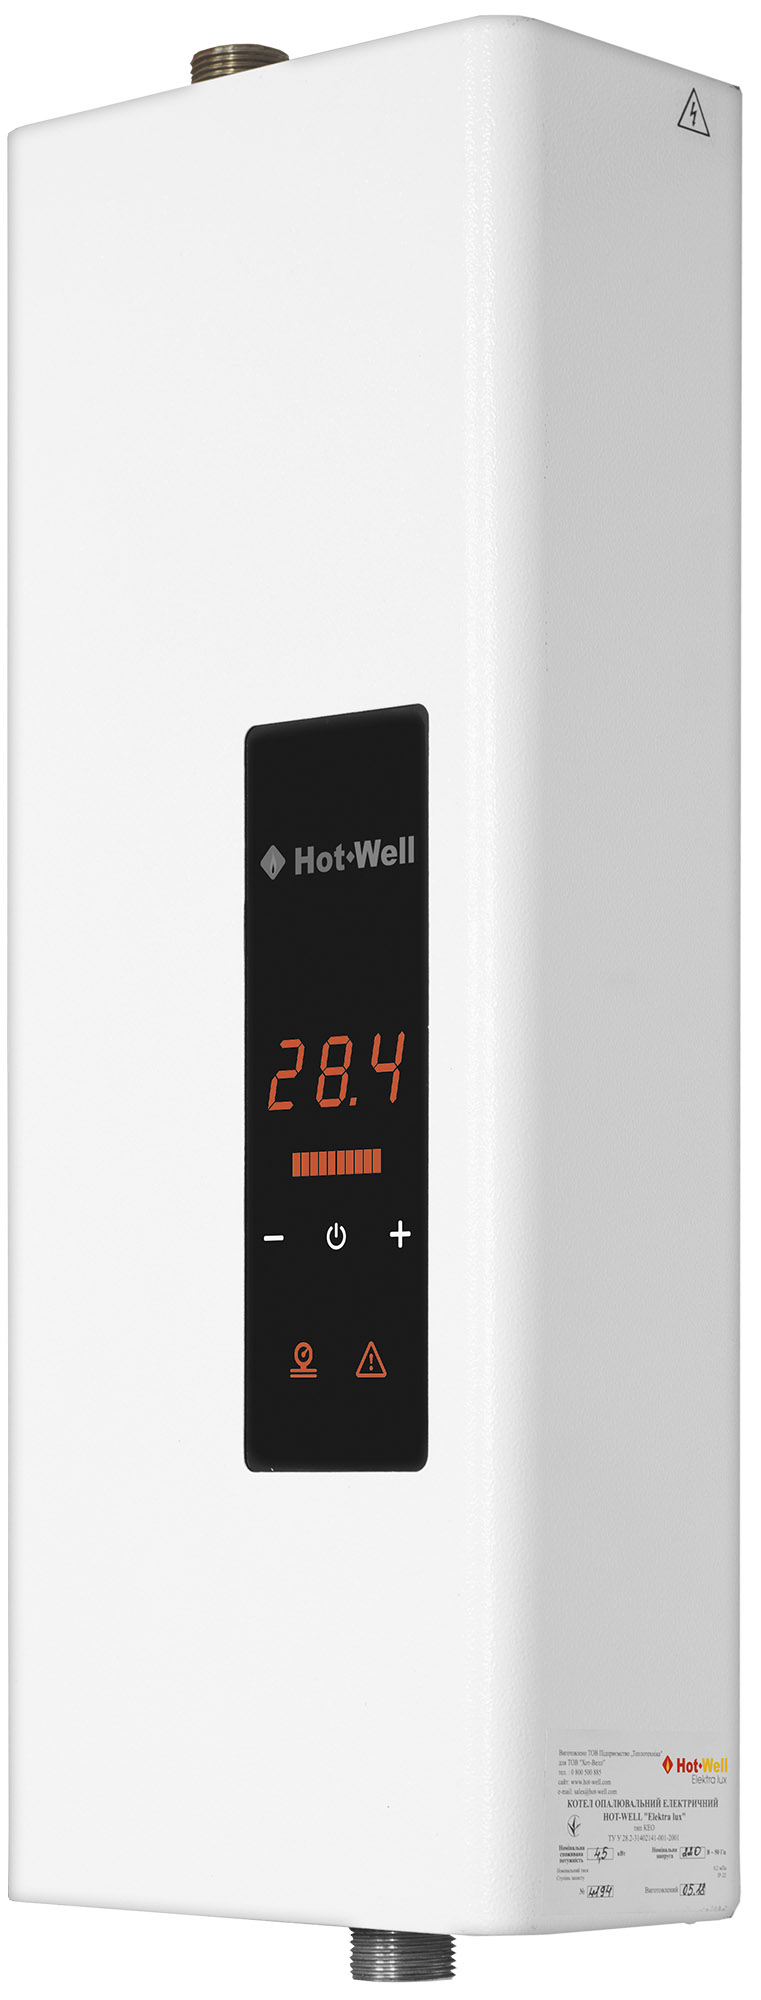 Котел Hot-Well електричний Hot-Well Elektra LUX S 6/220